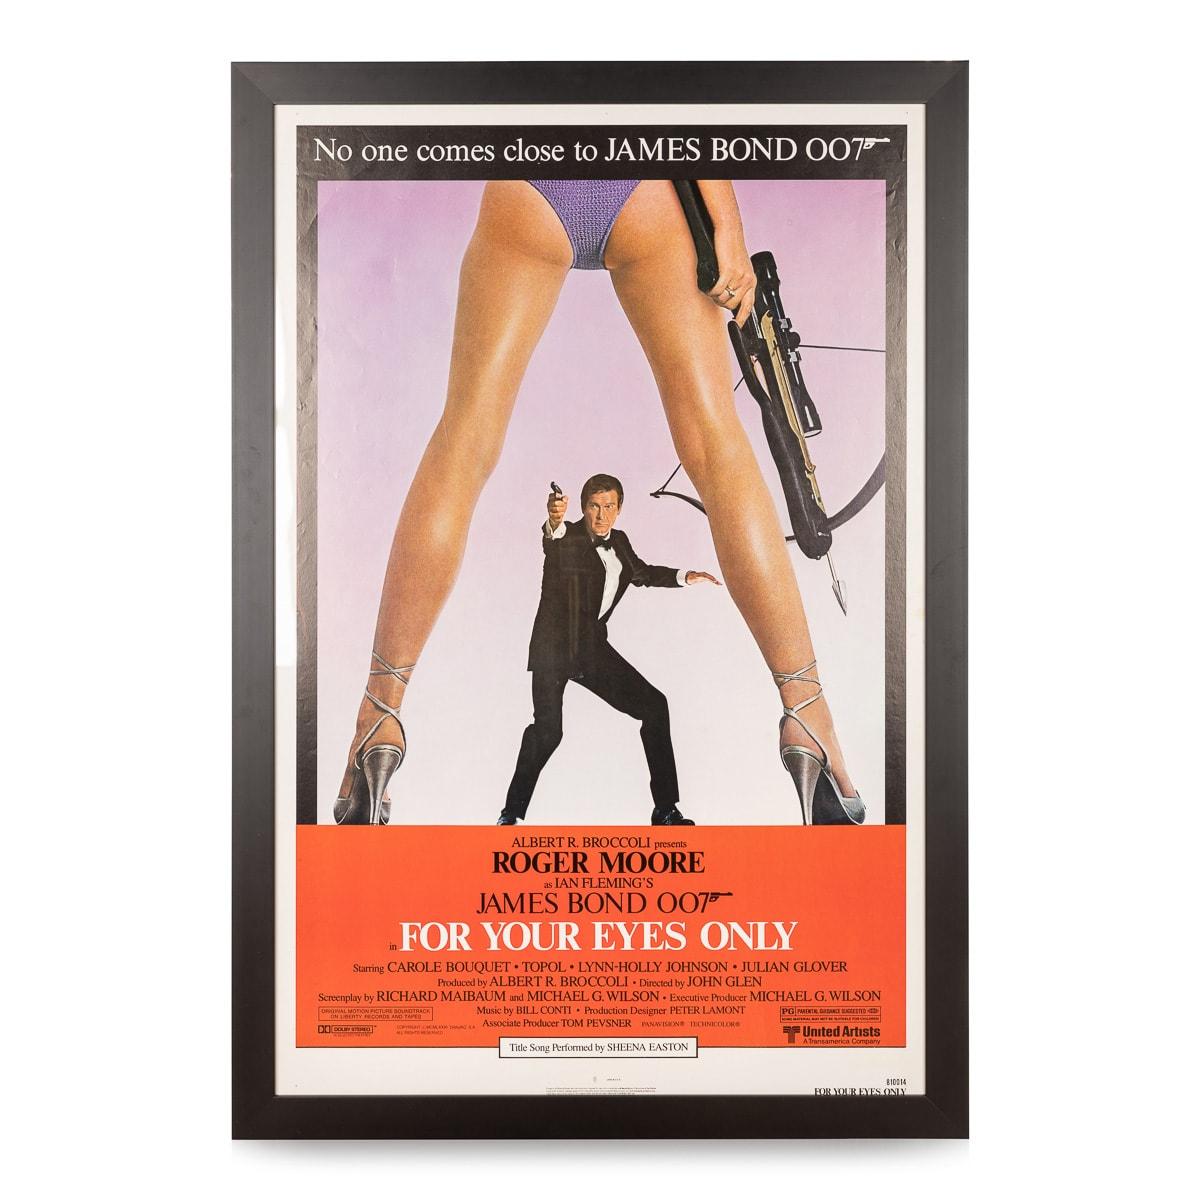 Une affiche rare et originale de la superproduction de James Bond 007, For Your Eyes Only. Film d'espionnage britannique de 1981 réalisé par John Glen (pour ses débuts dans la réalisation) et produit par Albert R. Broccoli. Le film met en vedette